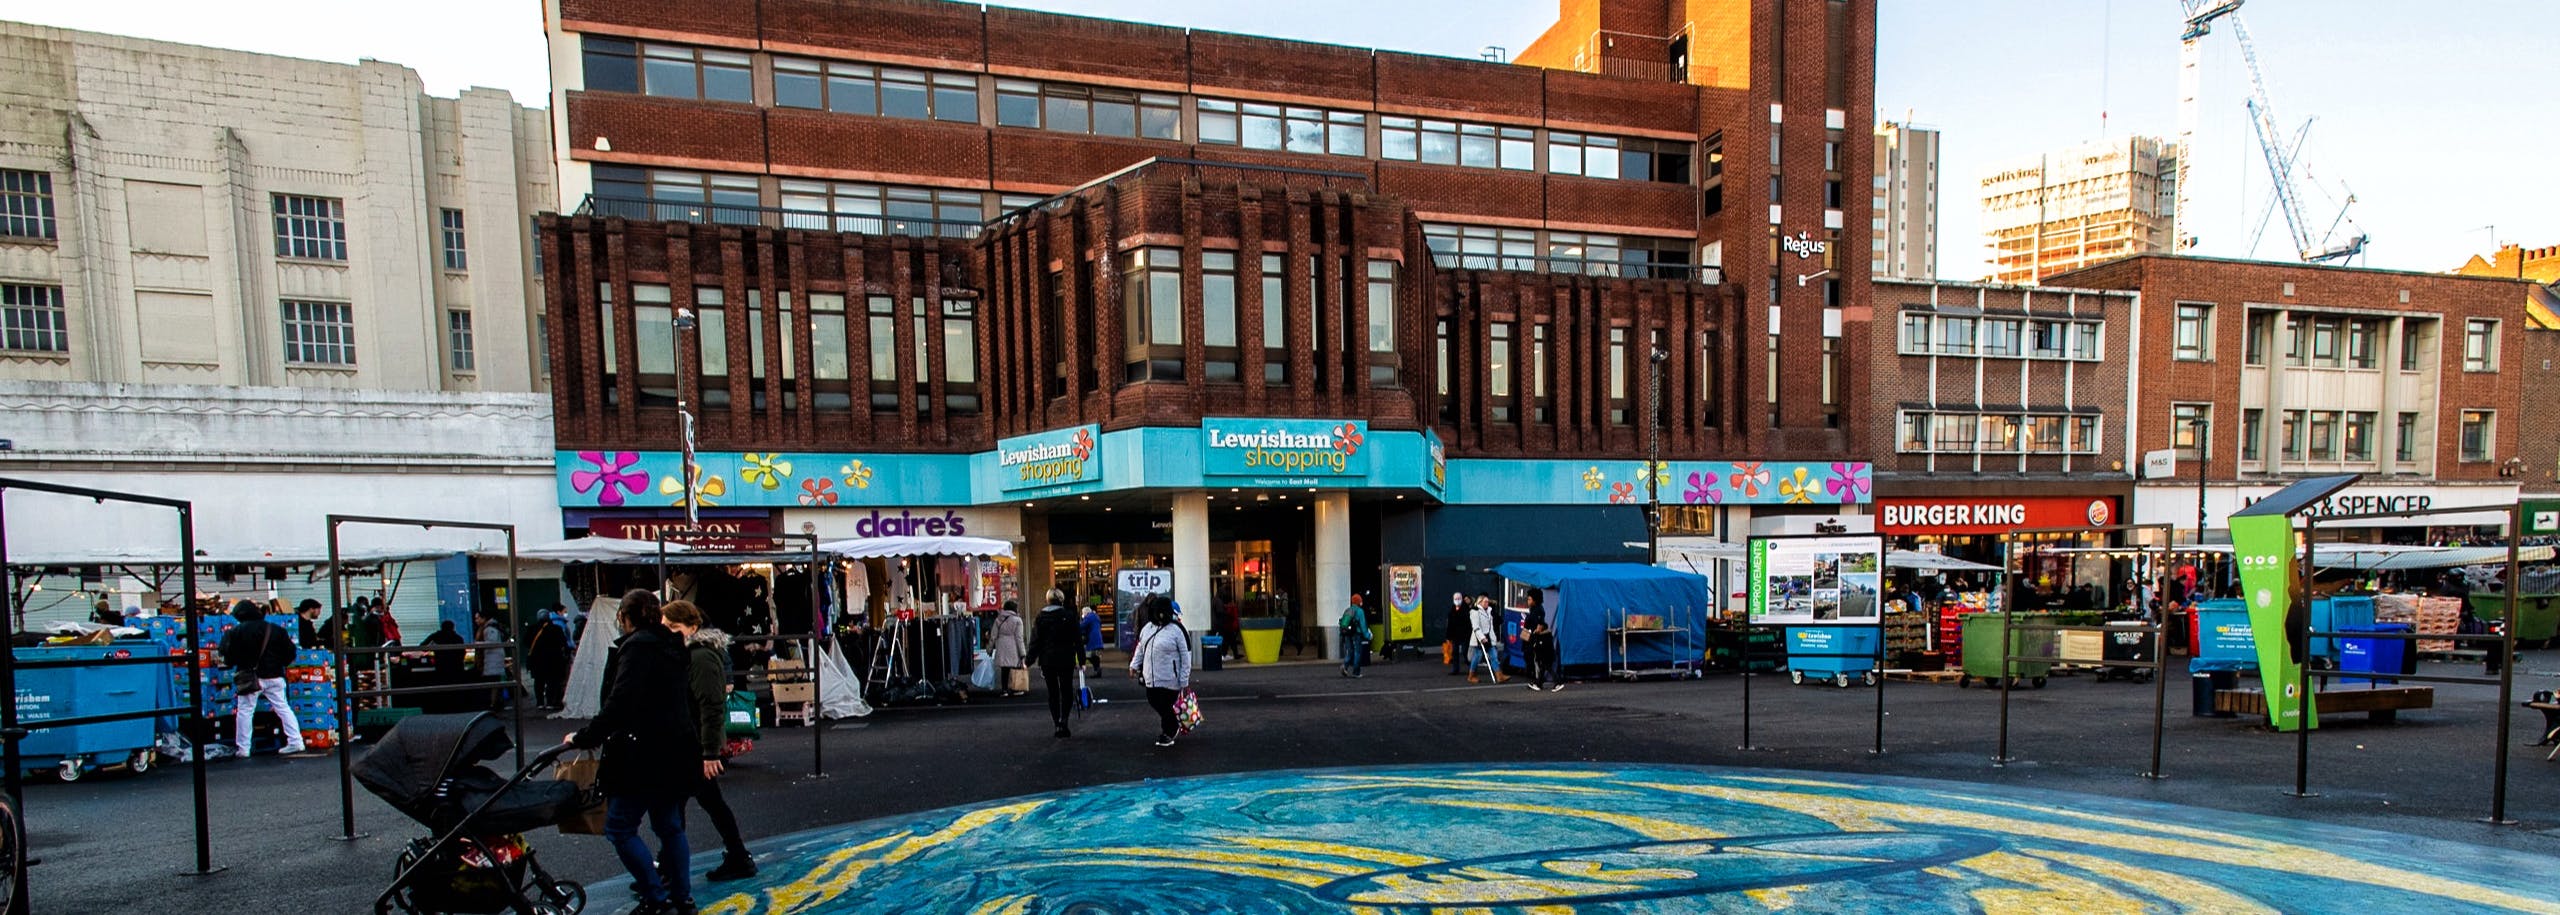 Image of Lewisham Shopping Centre entrance